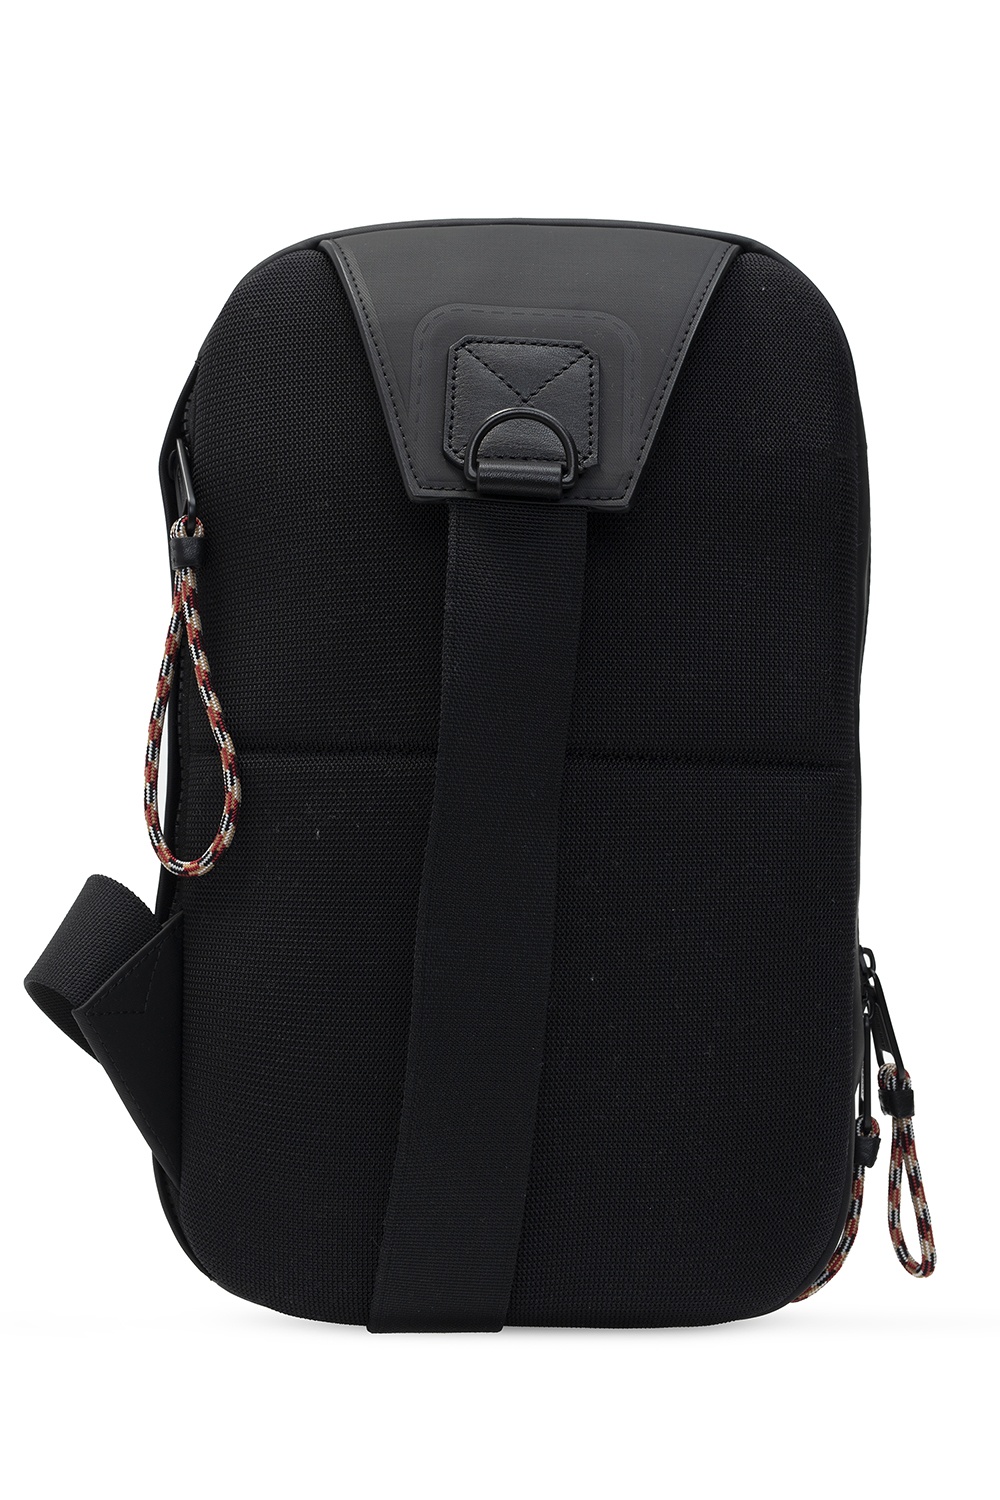 burberry blend One-shoulder backpack